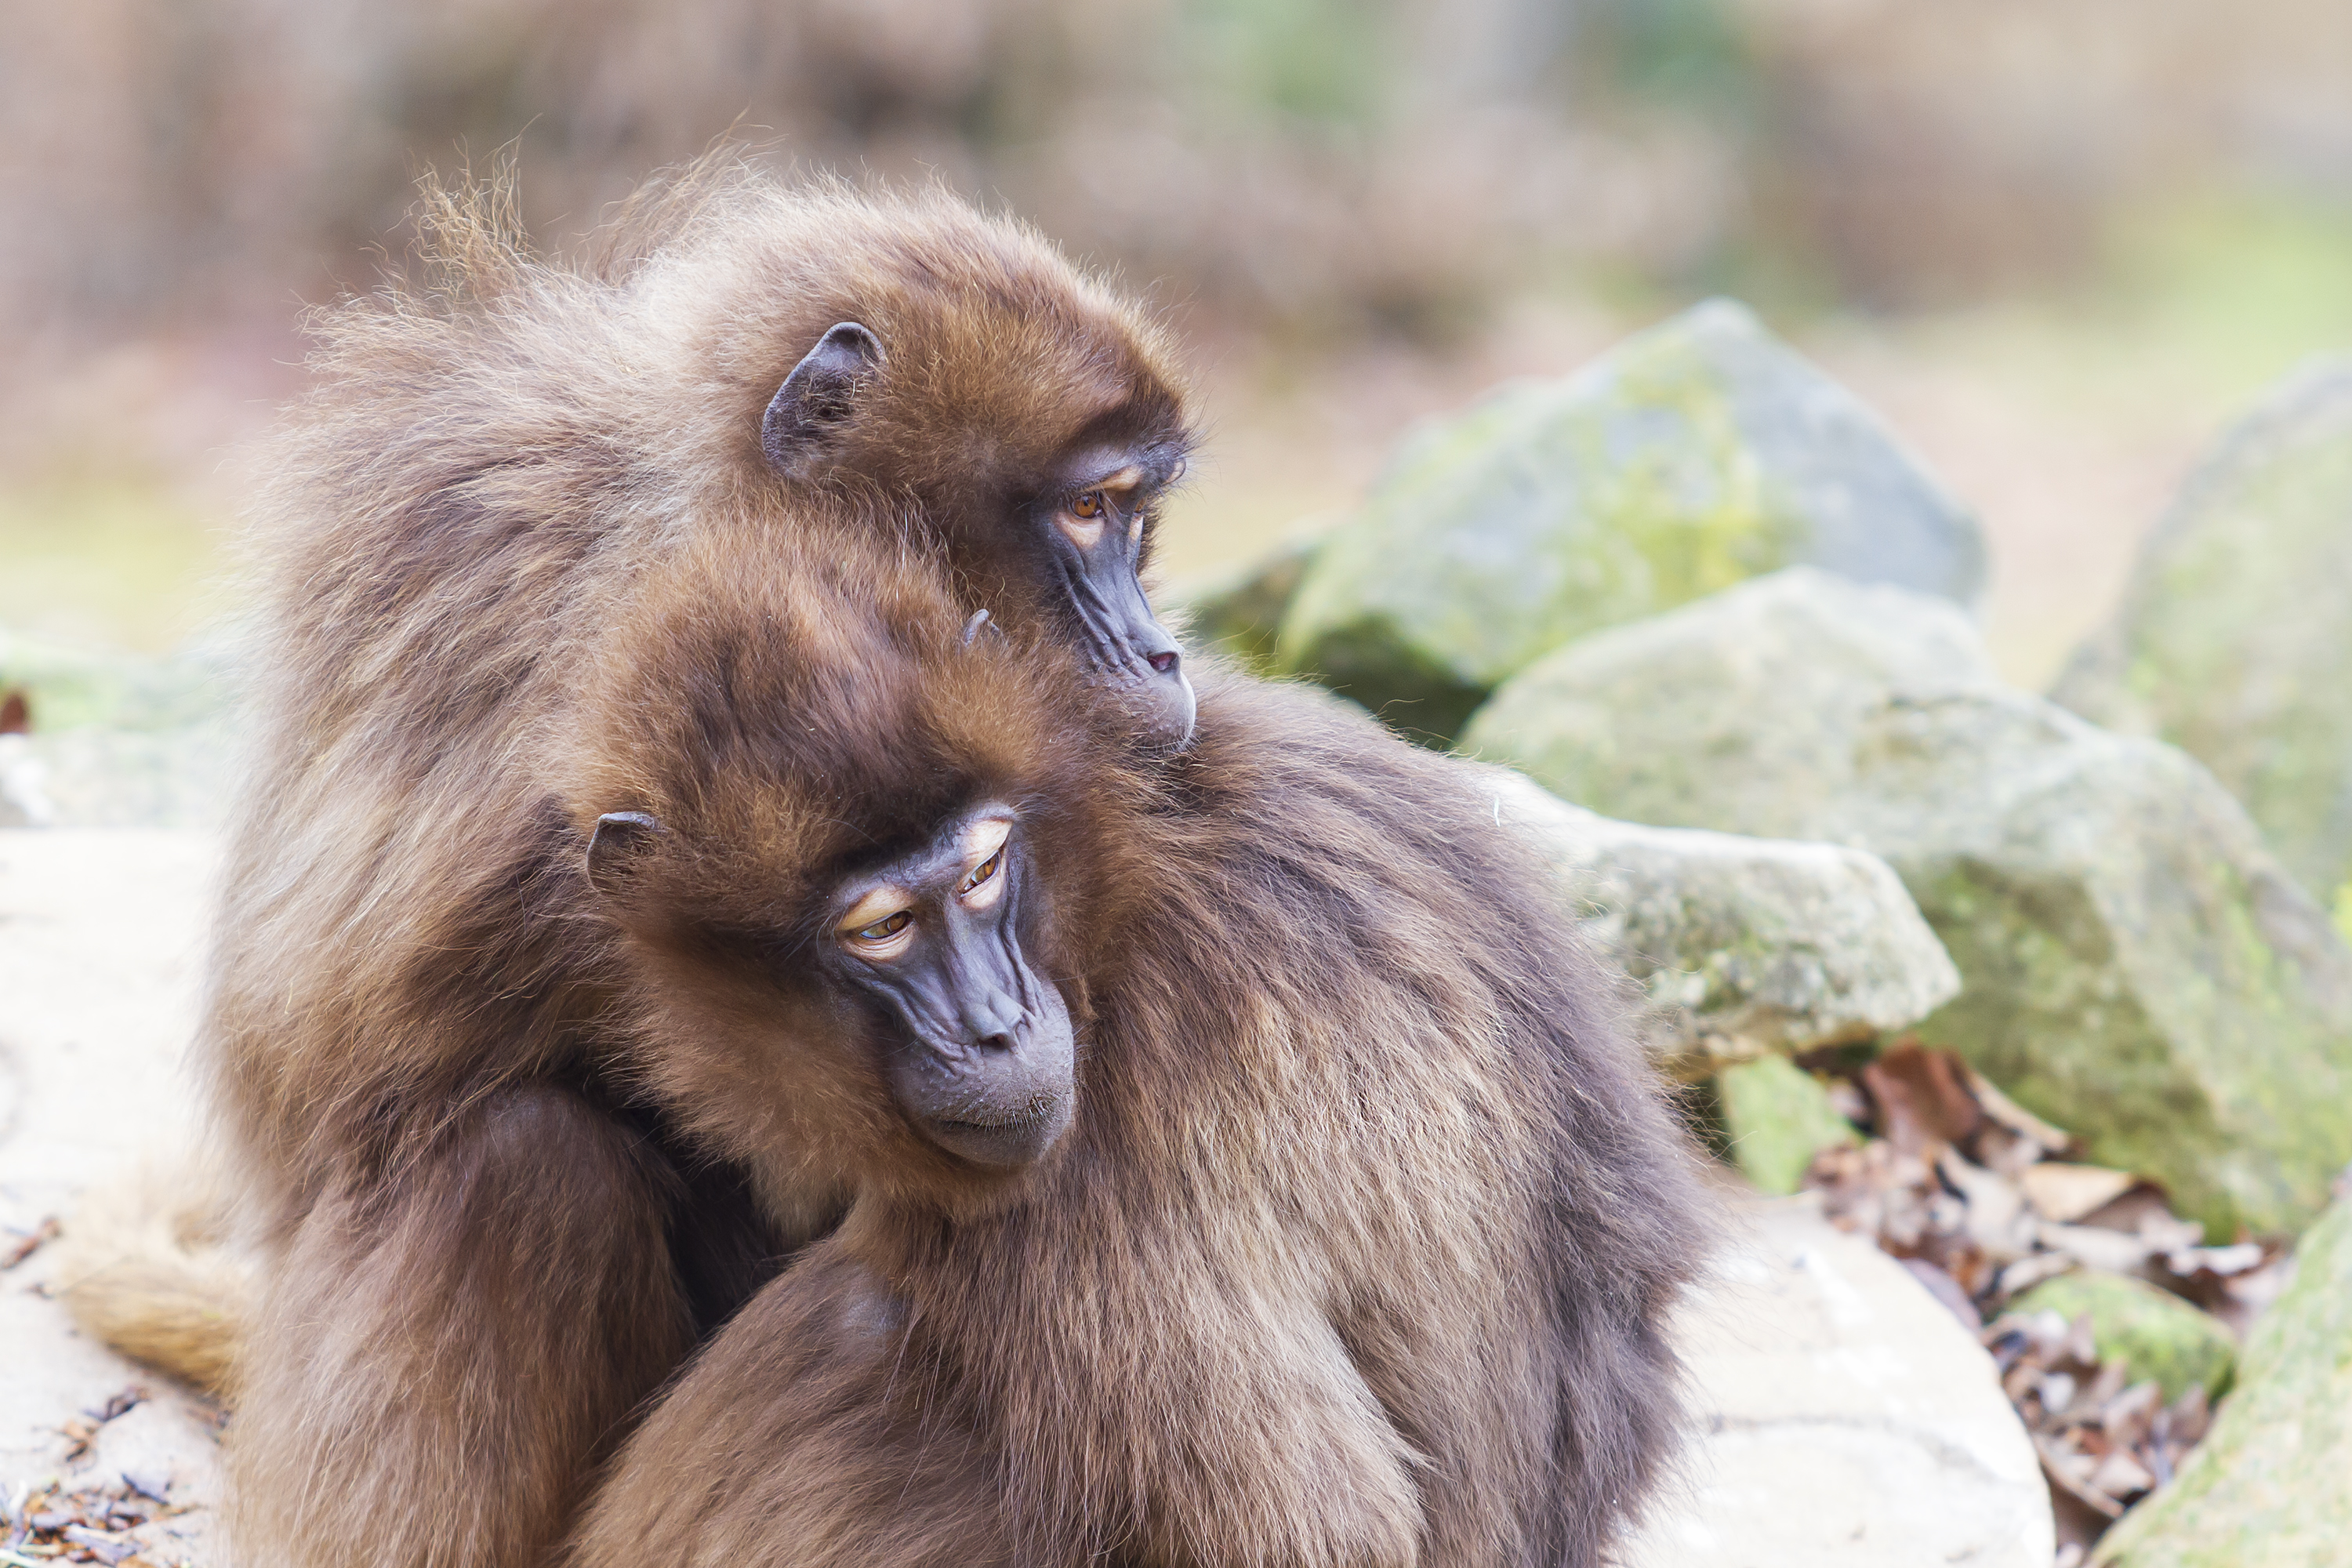 <p><strong>Маймуните маготи</strong></p>

<p>Гибралтар е единственото място в Европа, на което живеят диви маймуни от вида маготи, представители на род макаци. Можете да ги срещнете на върха на Гибралтарската скала, след като вземете лифт или такси до там.</p>

<p>Имайте предвид обаче, че те са доста нахални и се славят с крадливите си наклонности.</p>